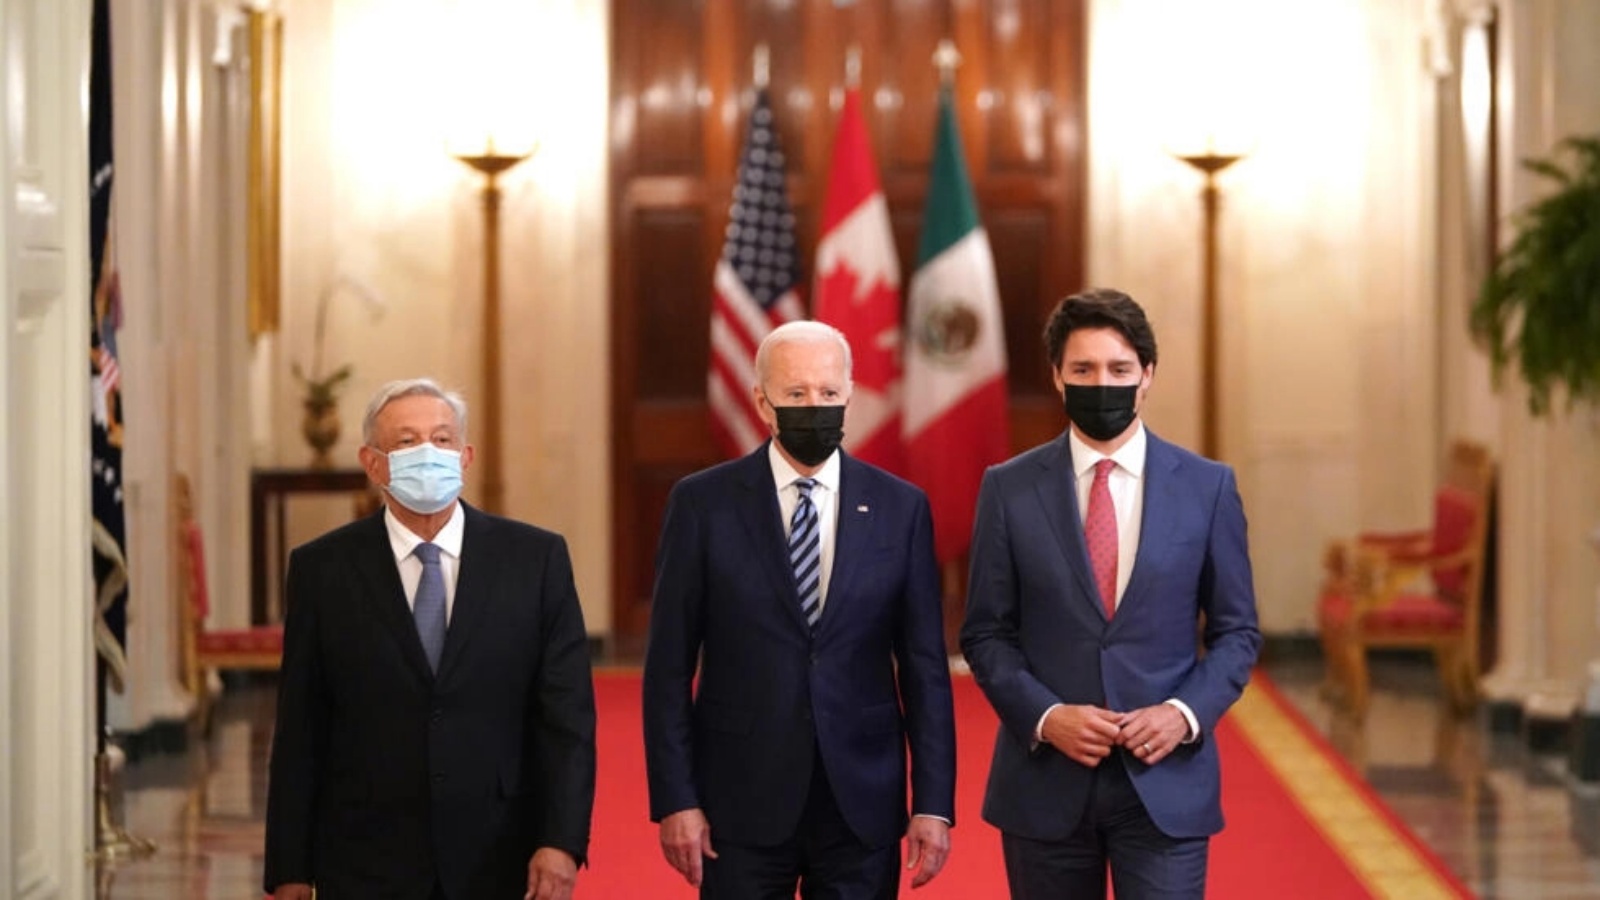 الرئيس الأميركي جو بايدن ورئيس الورزاء الكندي جاستن ترودو والرئيس المكسيكي أندريس مانيول لوبيز أوبرادور خلال قمة قادة أميركا الشمالية الأخيرة في واشنطن في العام 2021 